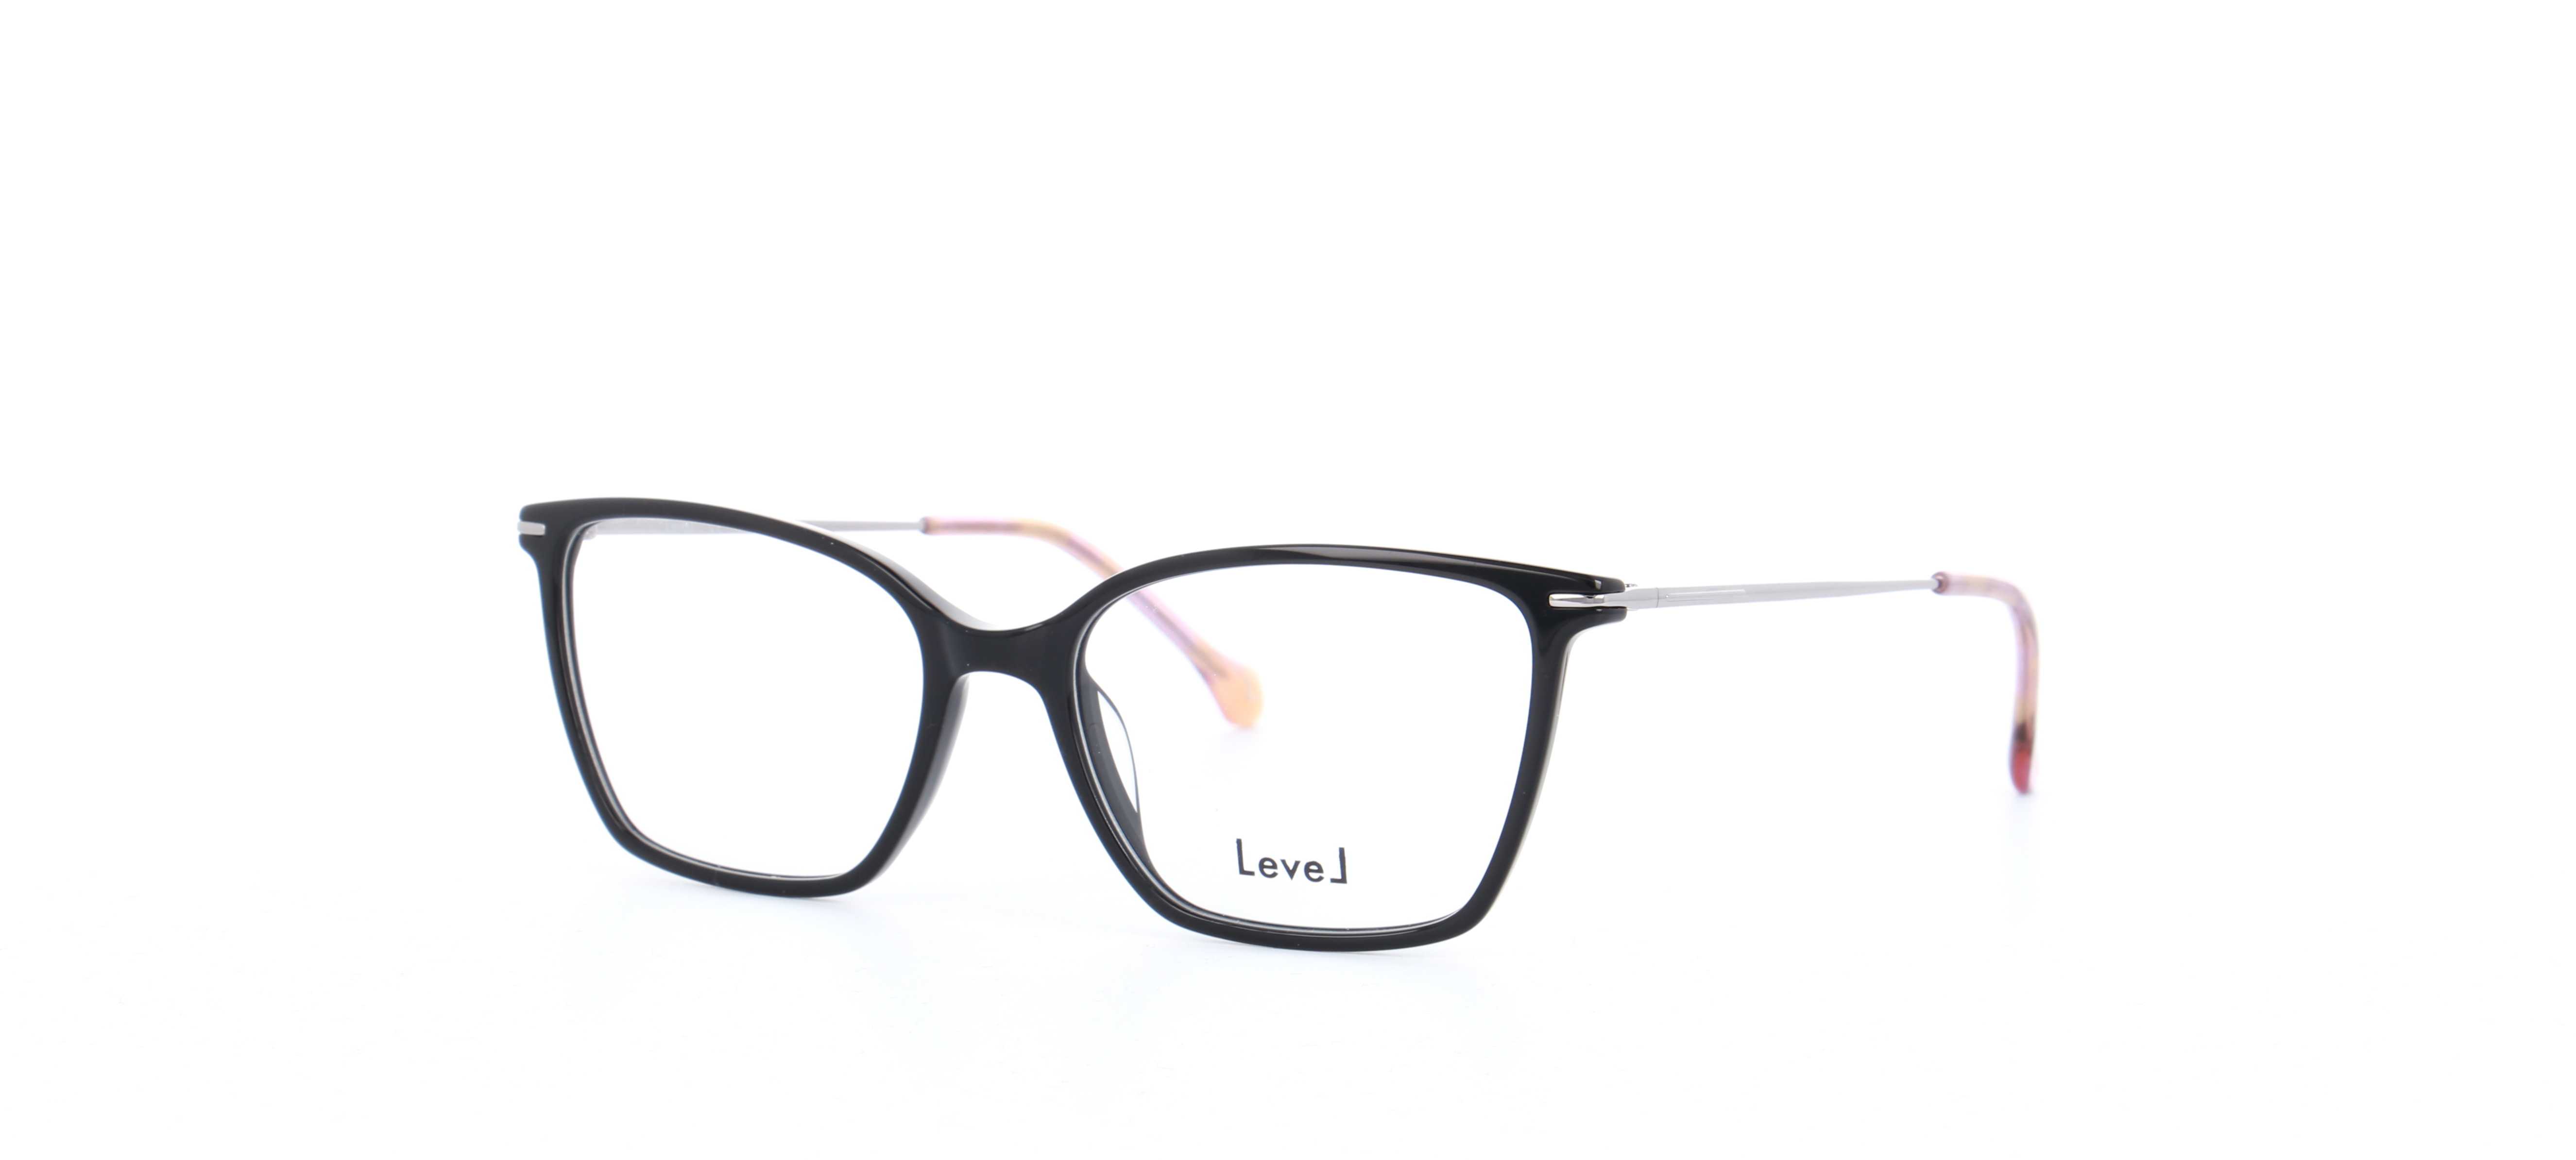 lunettes-de-vue-level-le-2189-noir-52-17-femme-noir-rectangle-cercl-e